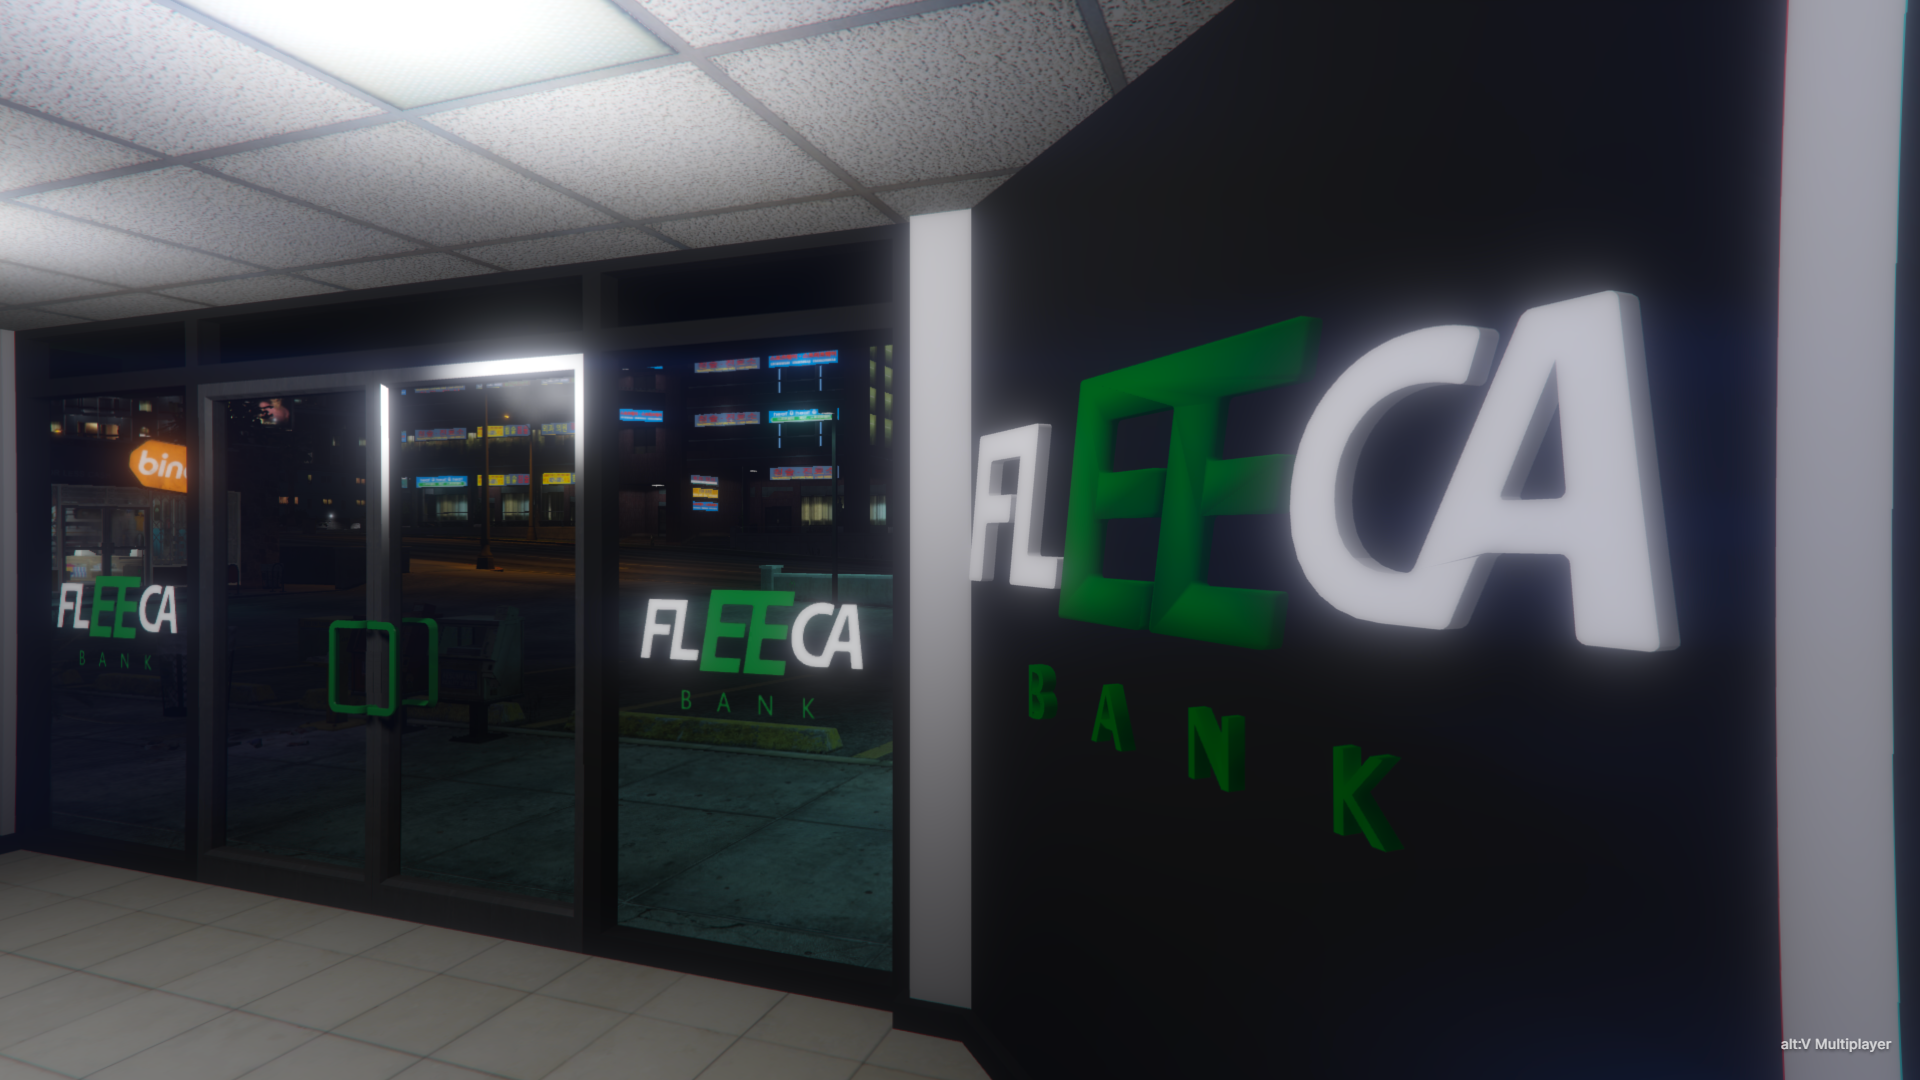 Fleeca bank in gta 5 фото 30